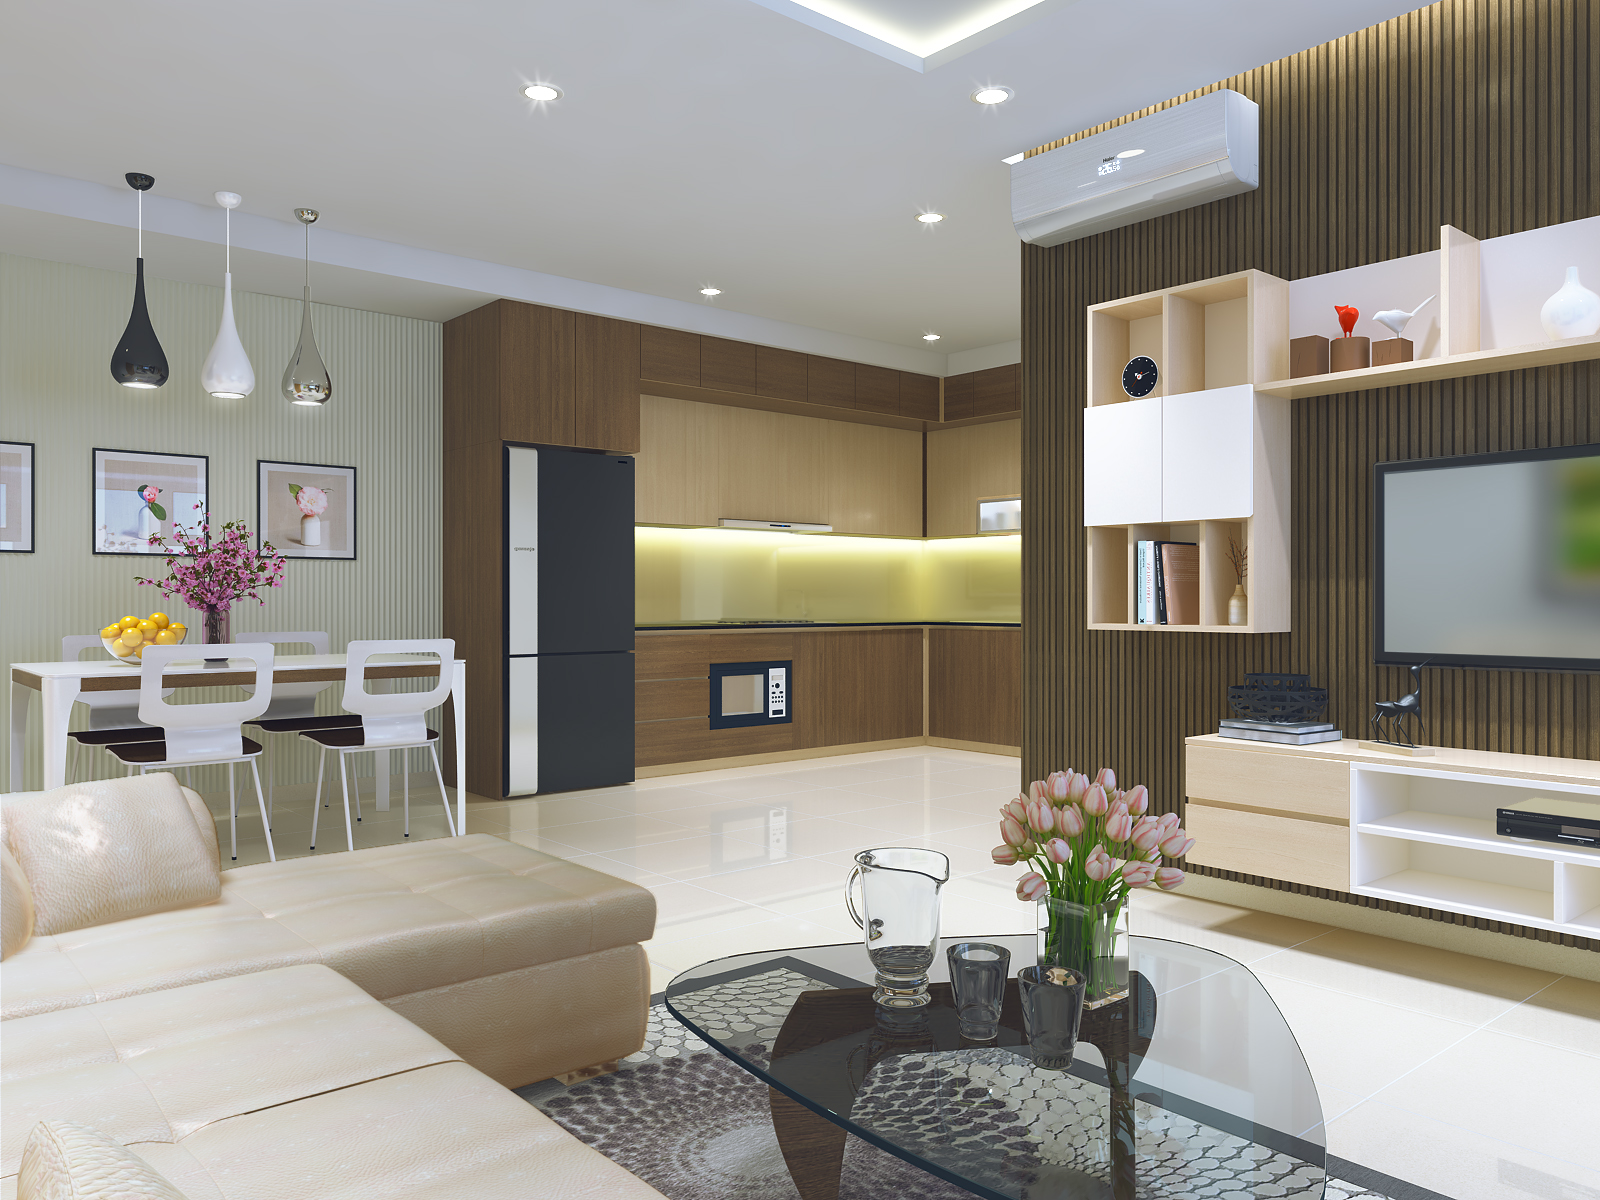 Thiết kế nội thất căn hộ hiện đại để tối ưu hóa công năng phòng bếp ăn